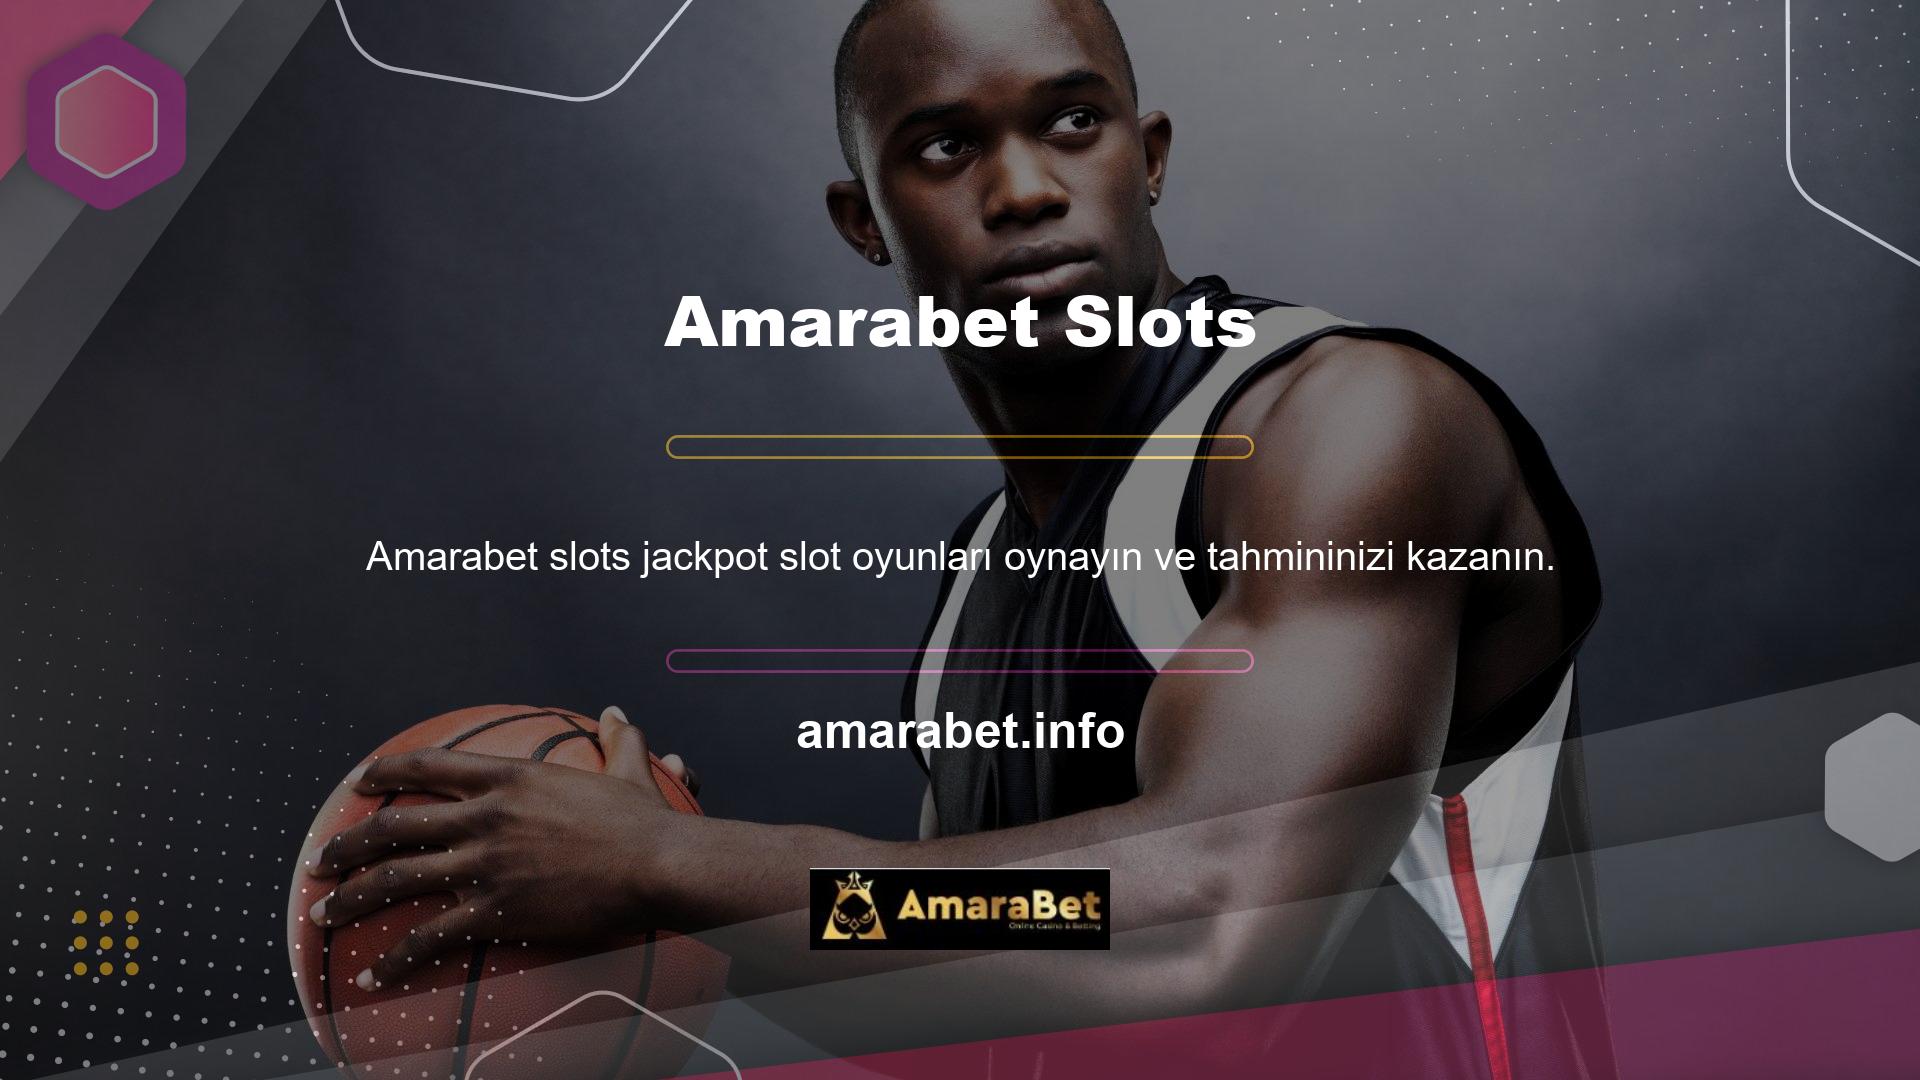 Amarabet slot servisi, jackpotların yanı sıra klasik slotlar ve video slotlar gibi çeşitli slot seçenekleri de sunmaktadır